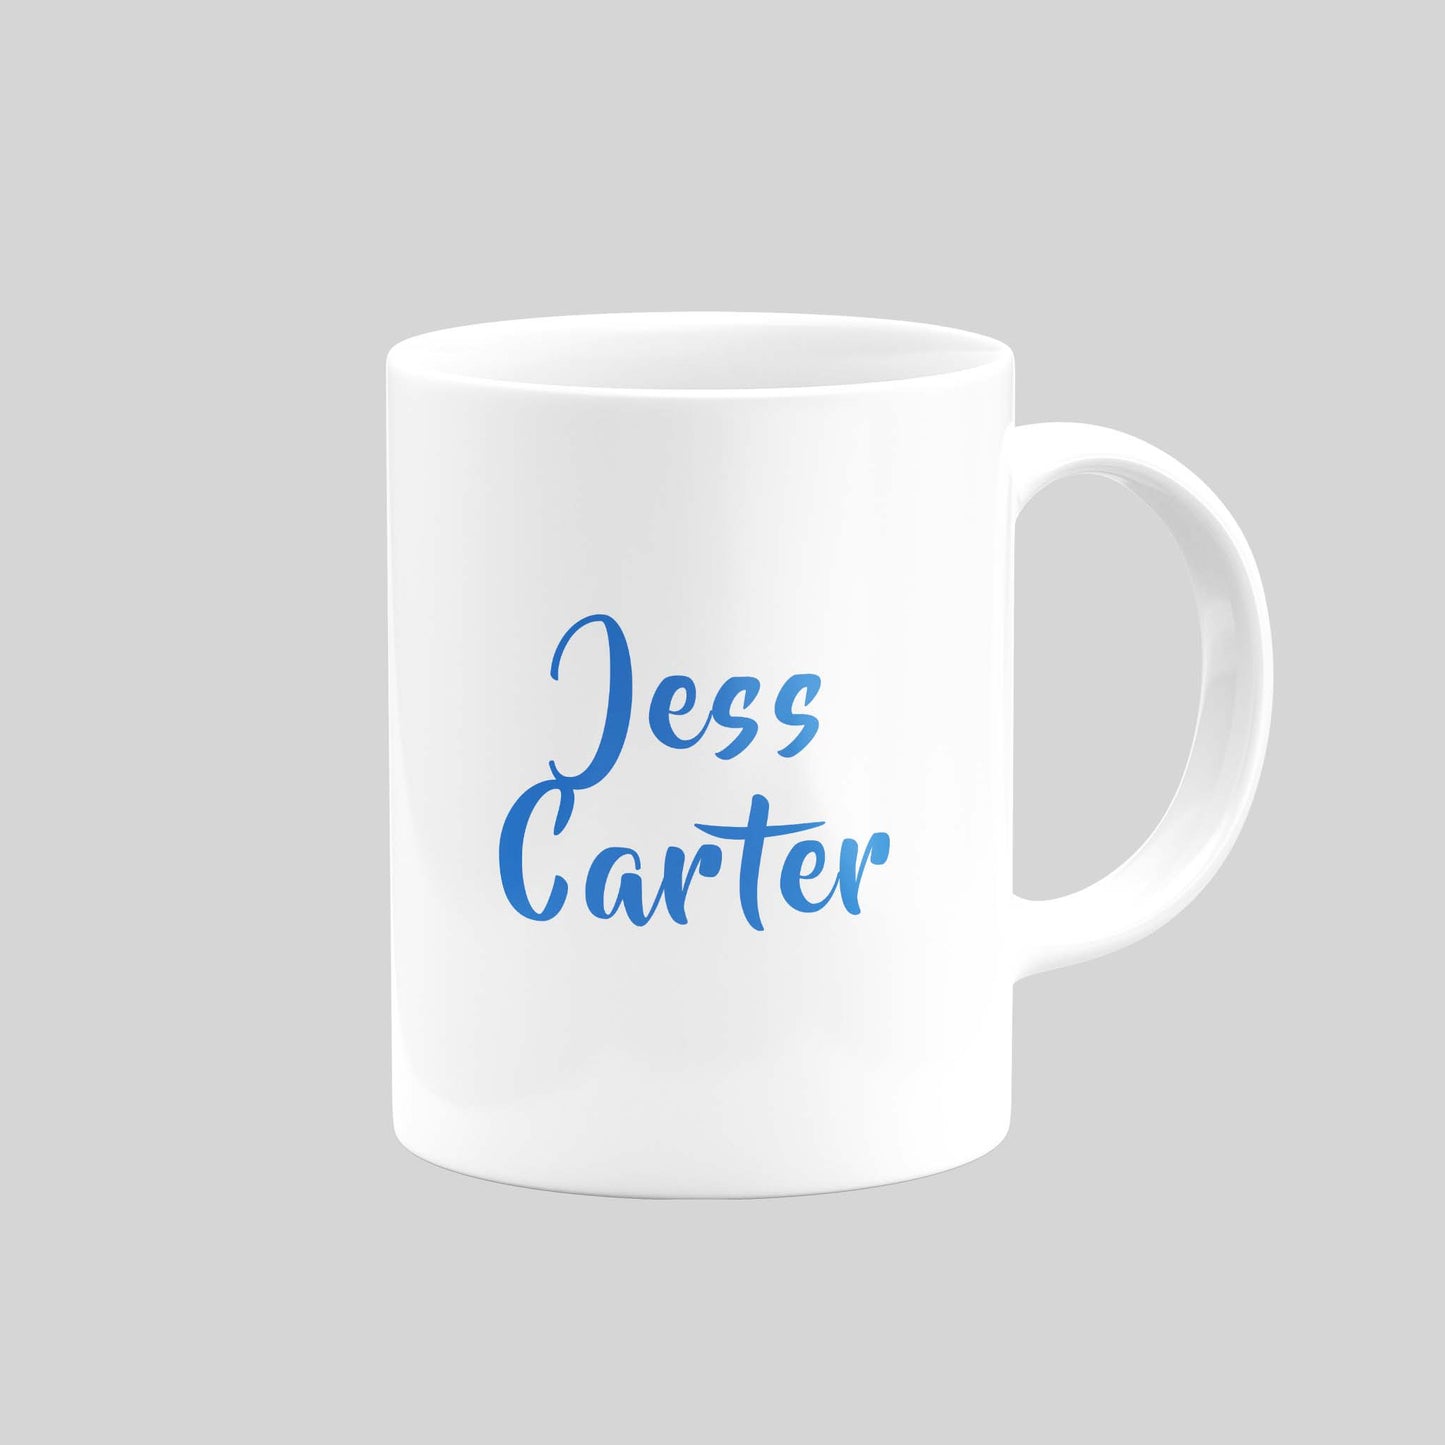 Jess Carter Mug